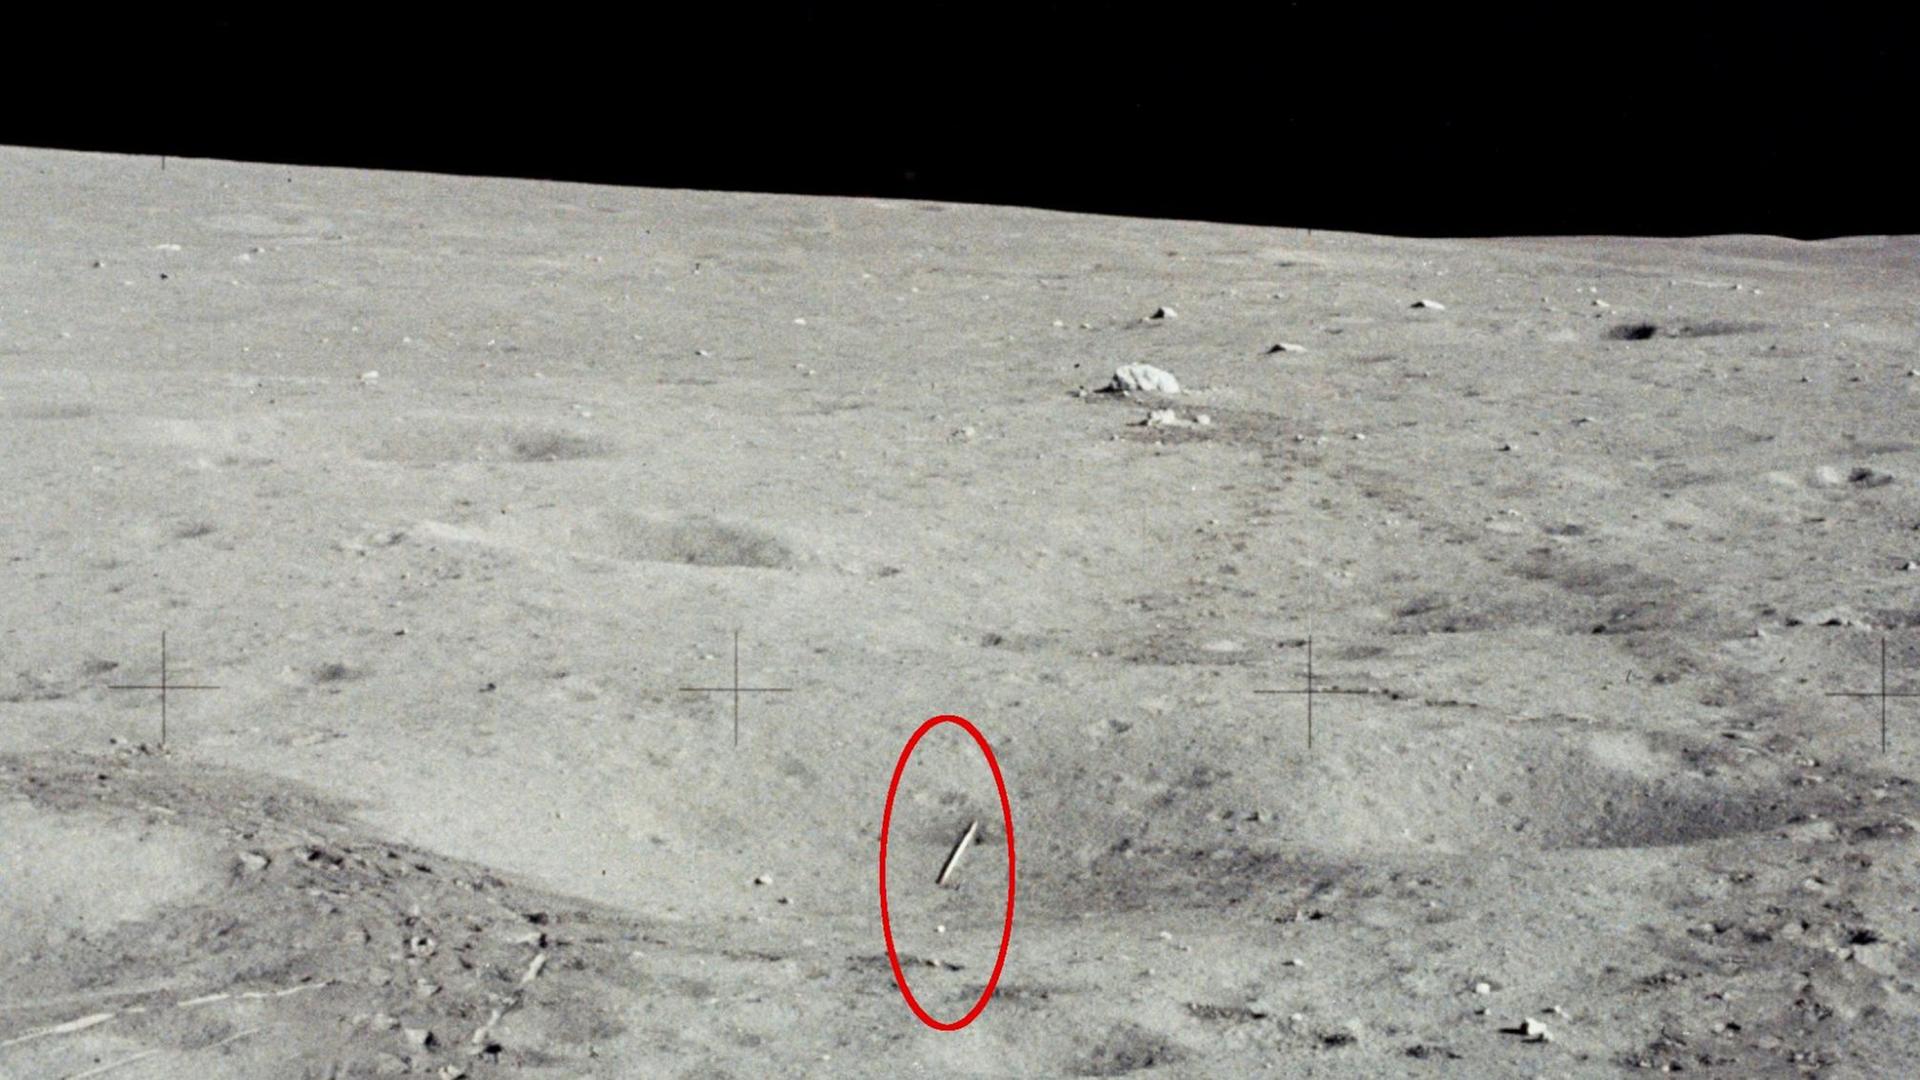 Der Speer und direkt unterhalb ein Golfball im später Javelin (englisch Speer) genannten Krater auf dem Mond